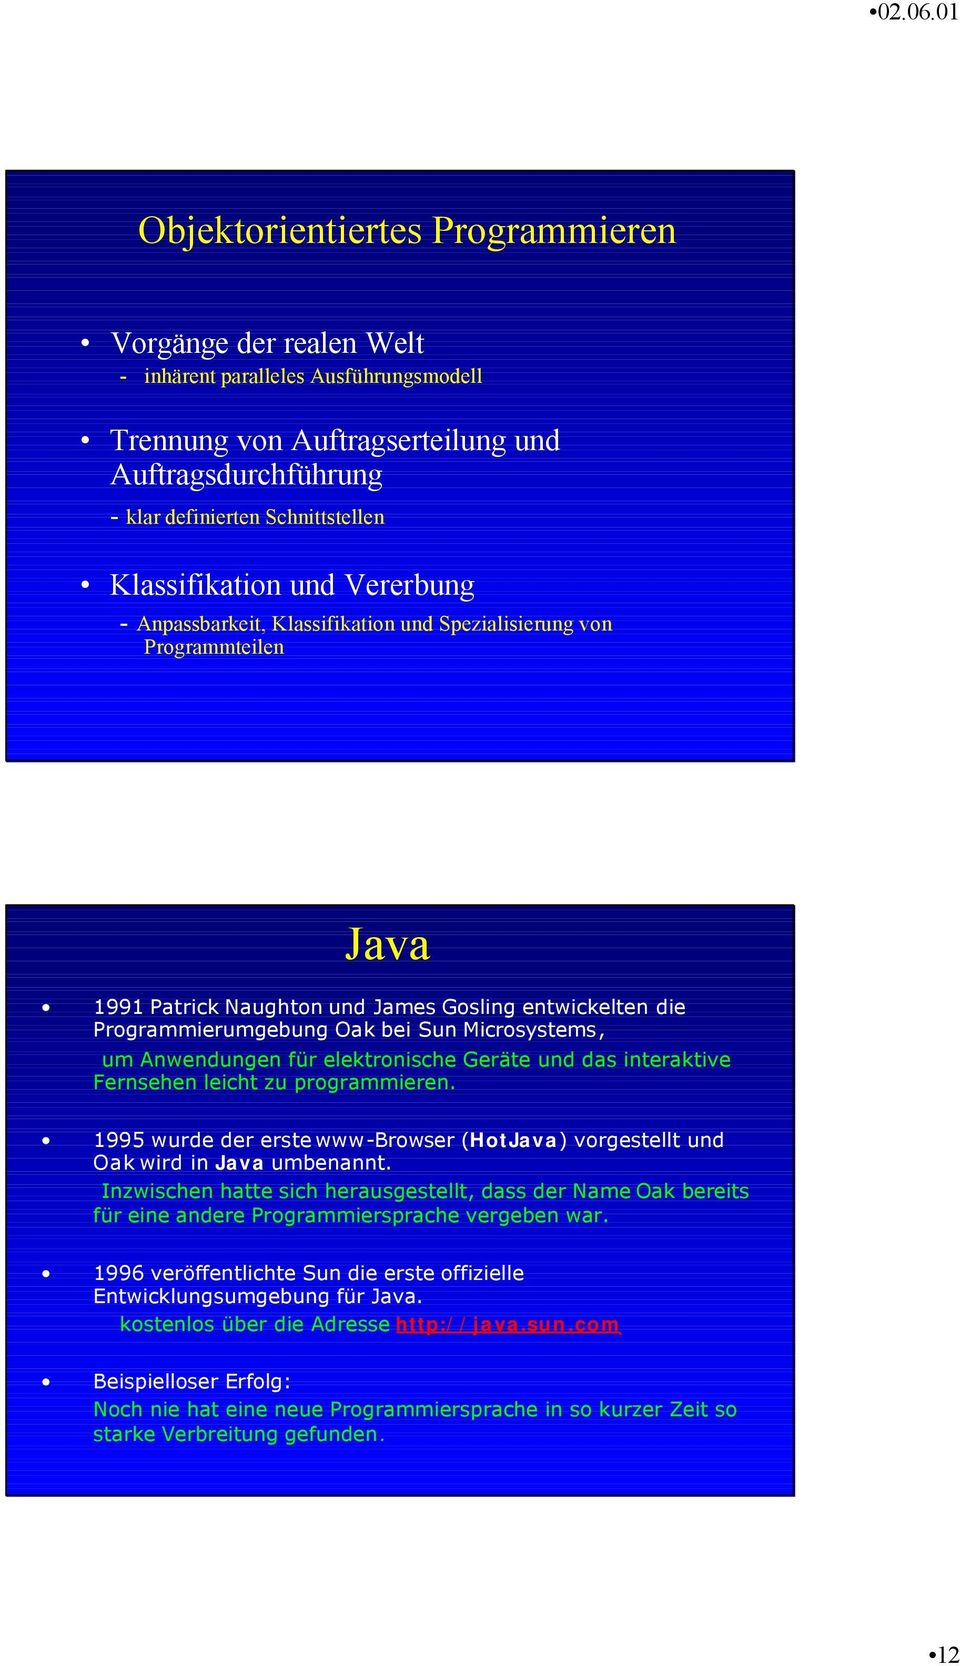 Microsystems, um Anwendungen für elektronische Geräte und das interaktive Fernsehen leicht zu programmieren. 1995 wurde der erste www-browser (HotJava) vorgestellt und Oakwird in Java umbenannt.